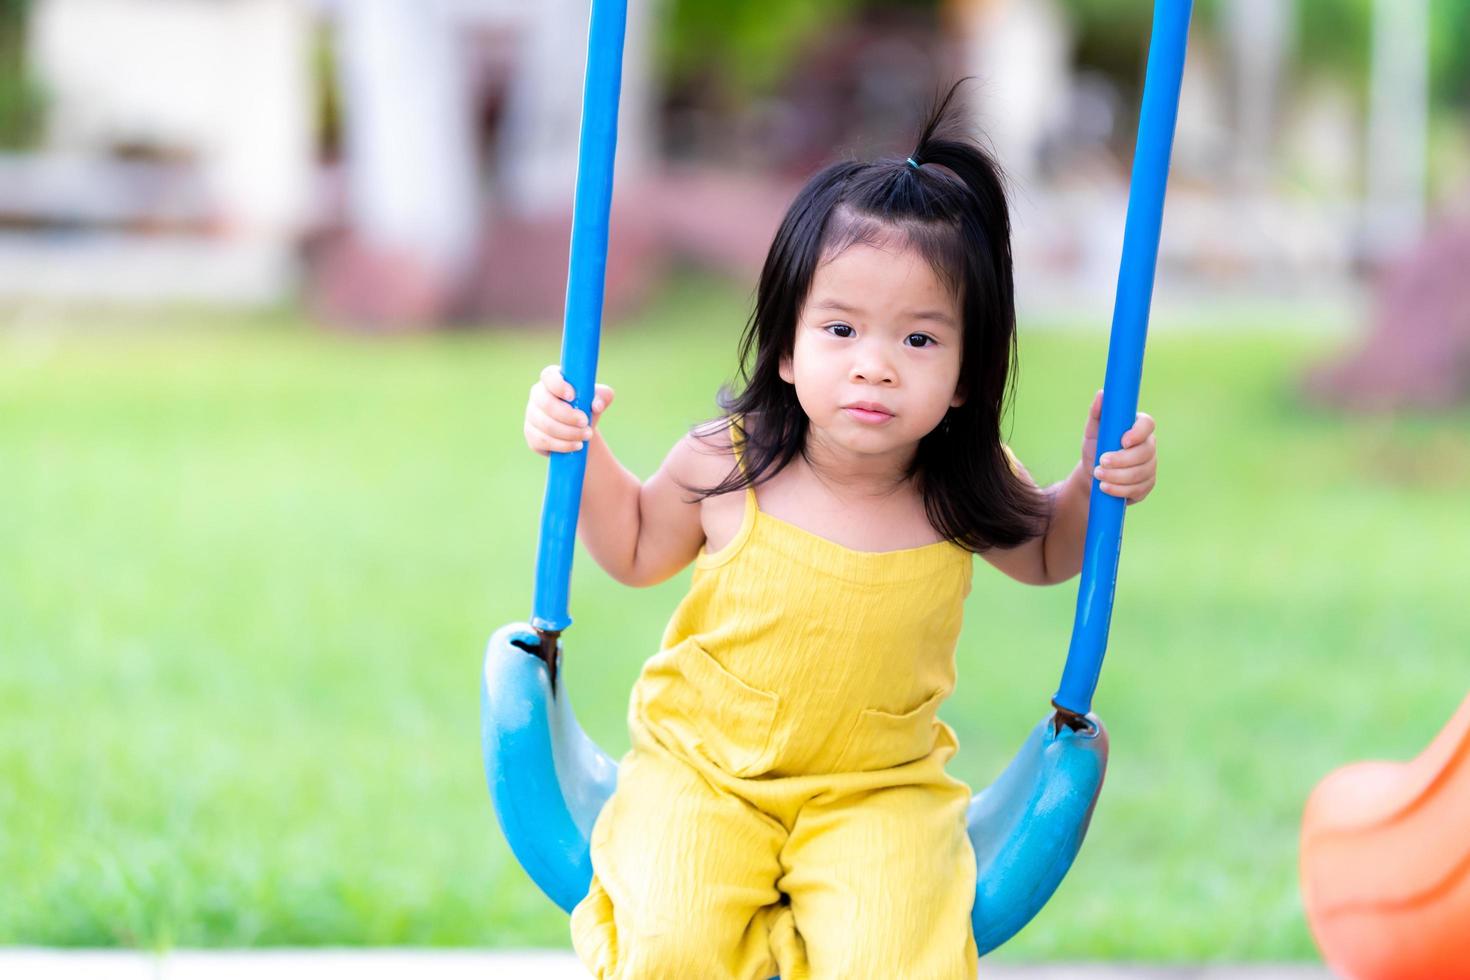 converteerbaar Marine tijdschrift Aziatische babymeisje spelen op blauwe schommel. kind dat gele jurk draagt.  kind van 3 jaar oud heeft plezier in de speeltuin. 4816148 stockfoto bij  Vecteezy